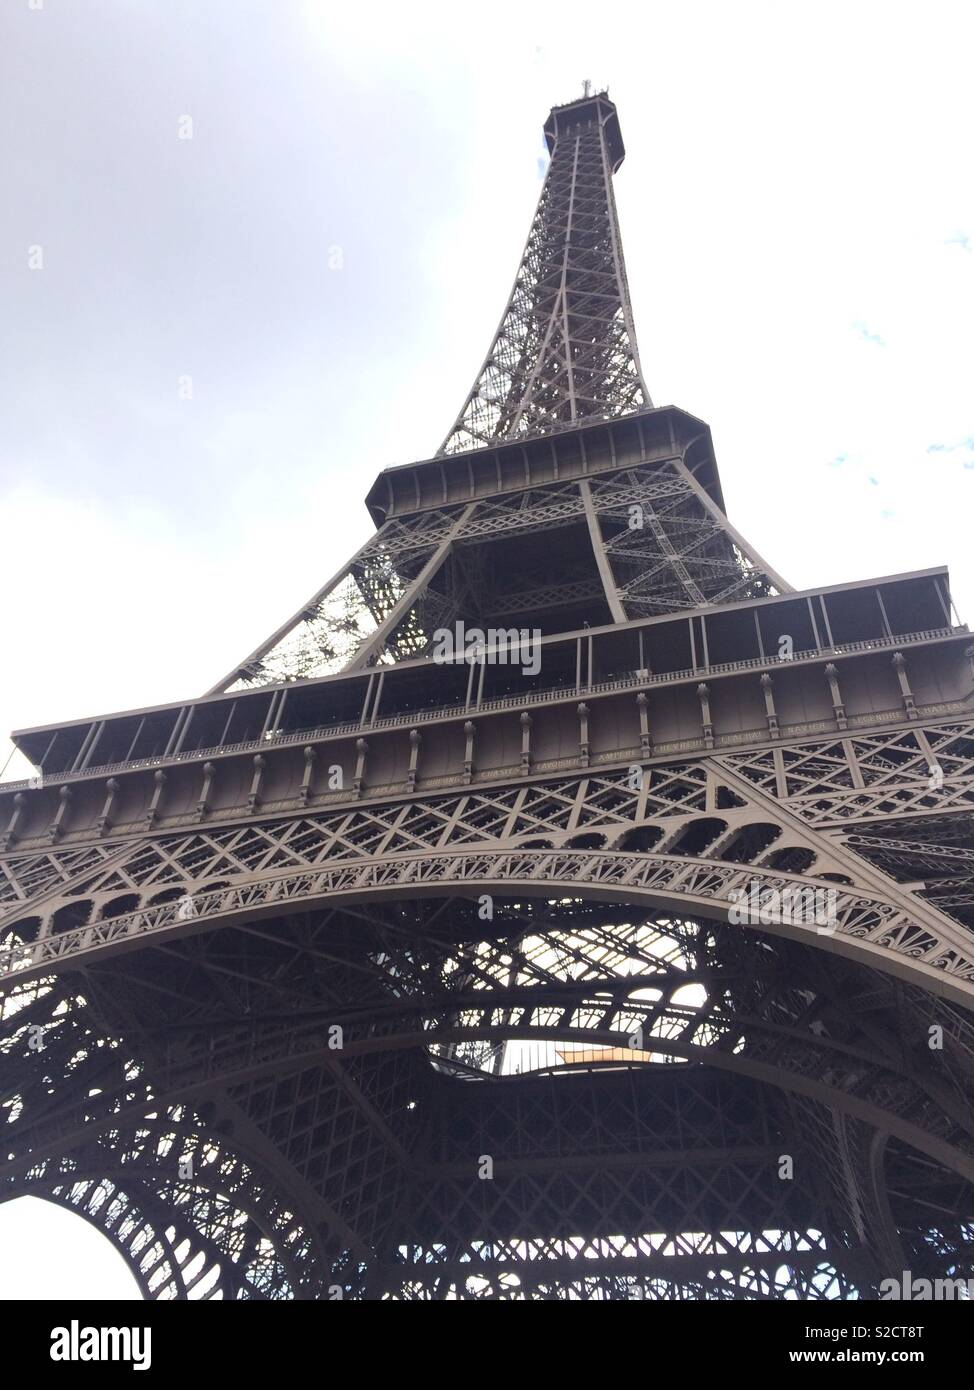 La Tour Eiffel / The Eiffel Tower Stock Photo